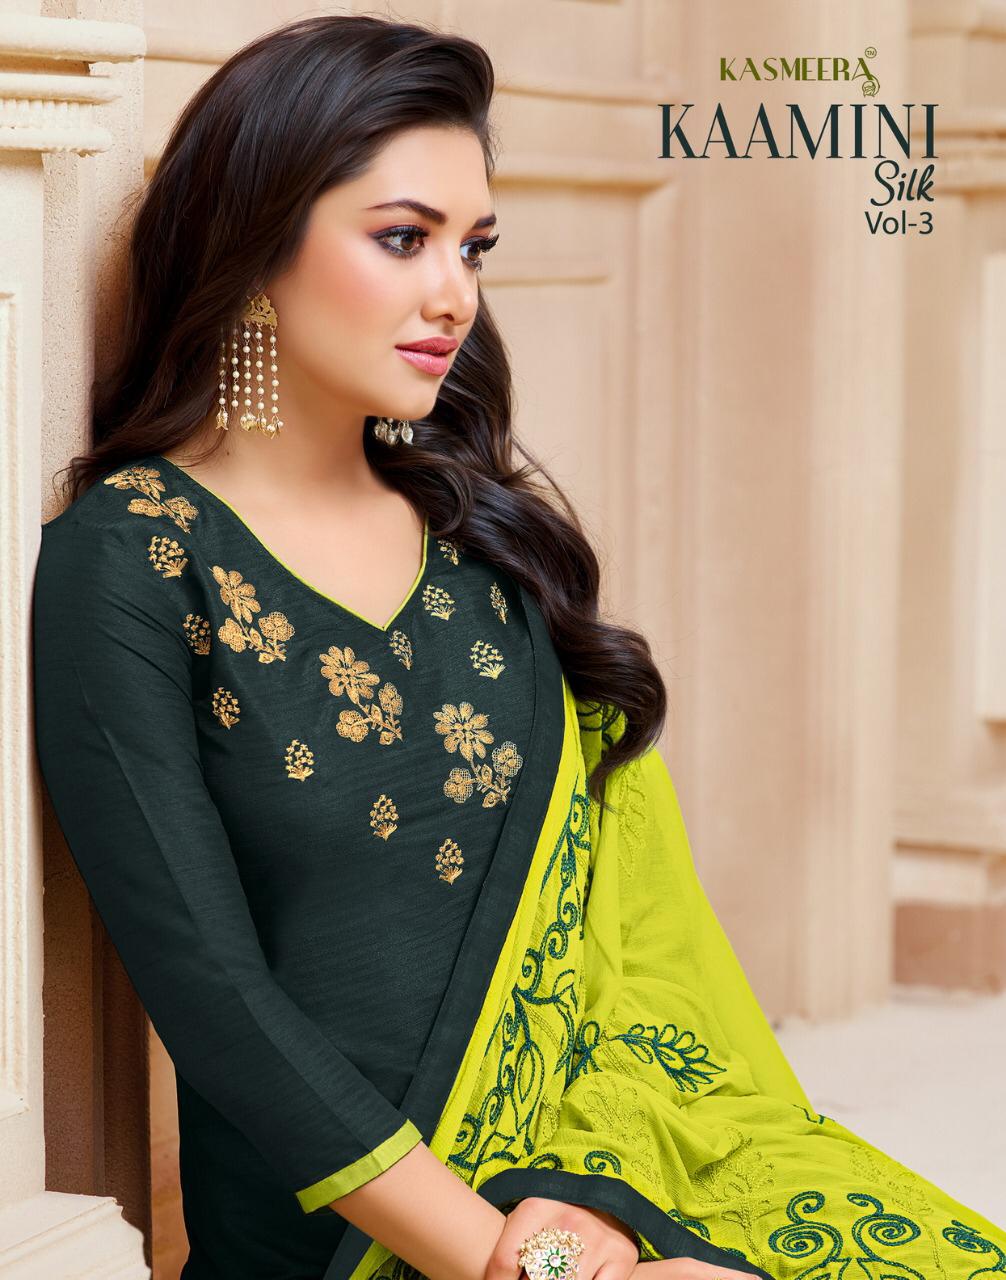 kasmeera kaamini  silk vol 3 colorful fancy collection of salwaar suits at reasonable rate